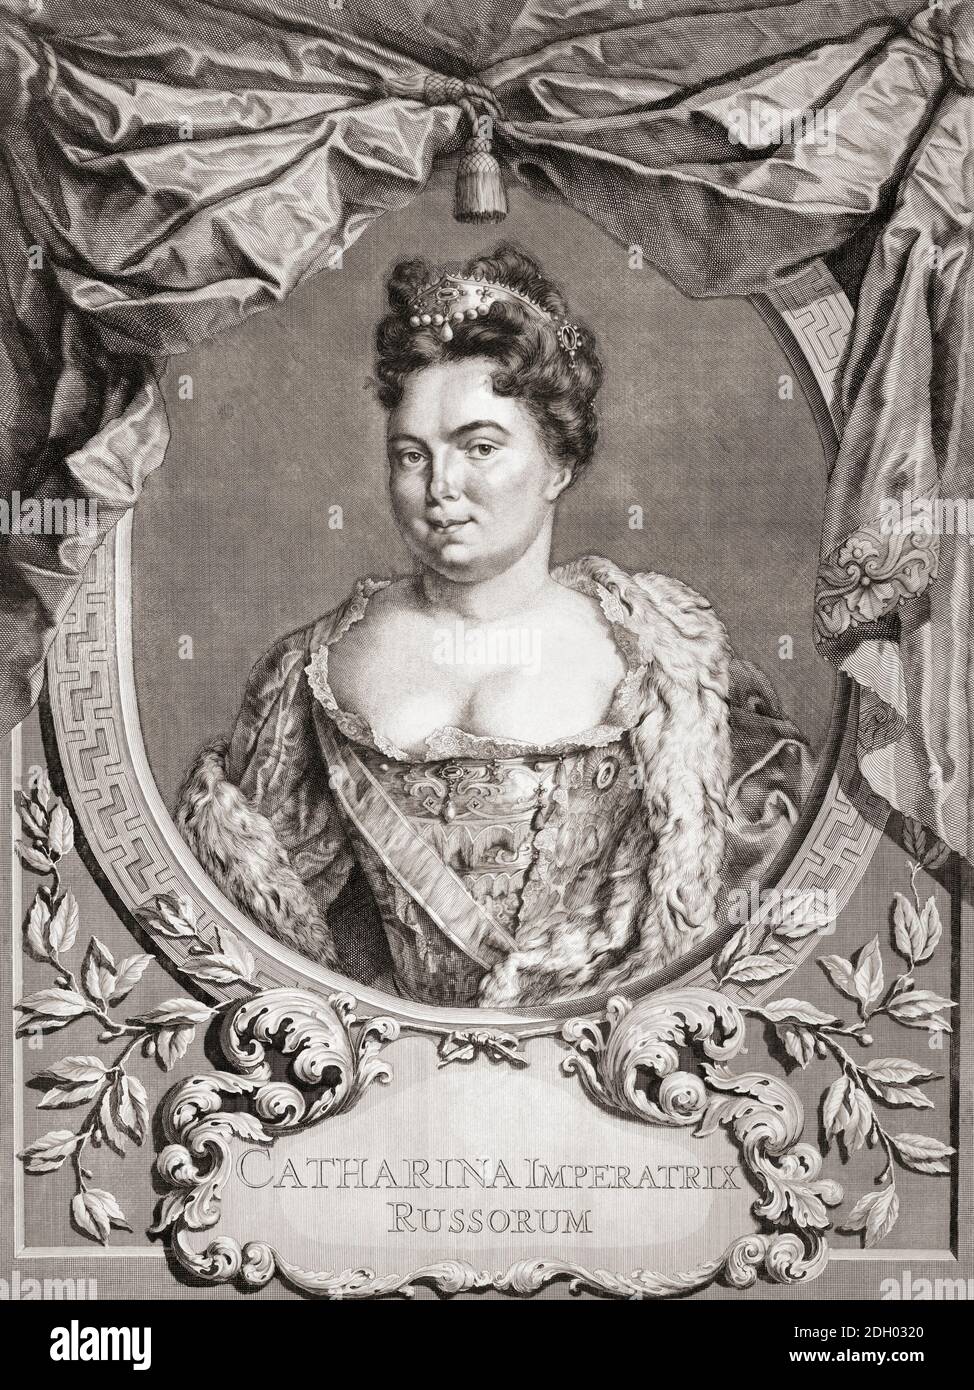 Caterina i, nata Marta Samuilovna Skavronskaya, 1684 – 1727. Imperatrice consorte di Russia come seconda moglie di Pietro il Grande. Dopo un lavoro di Jacob Houbraken. Foto Stock